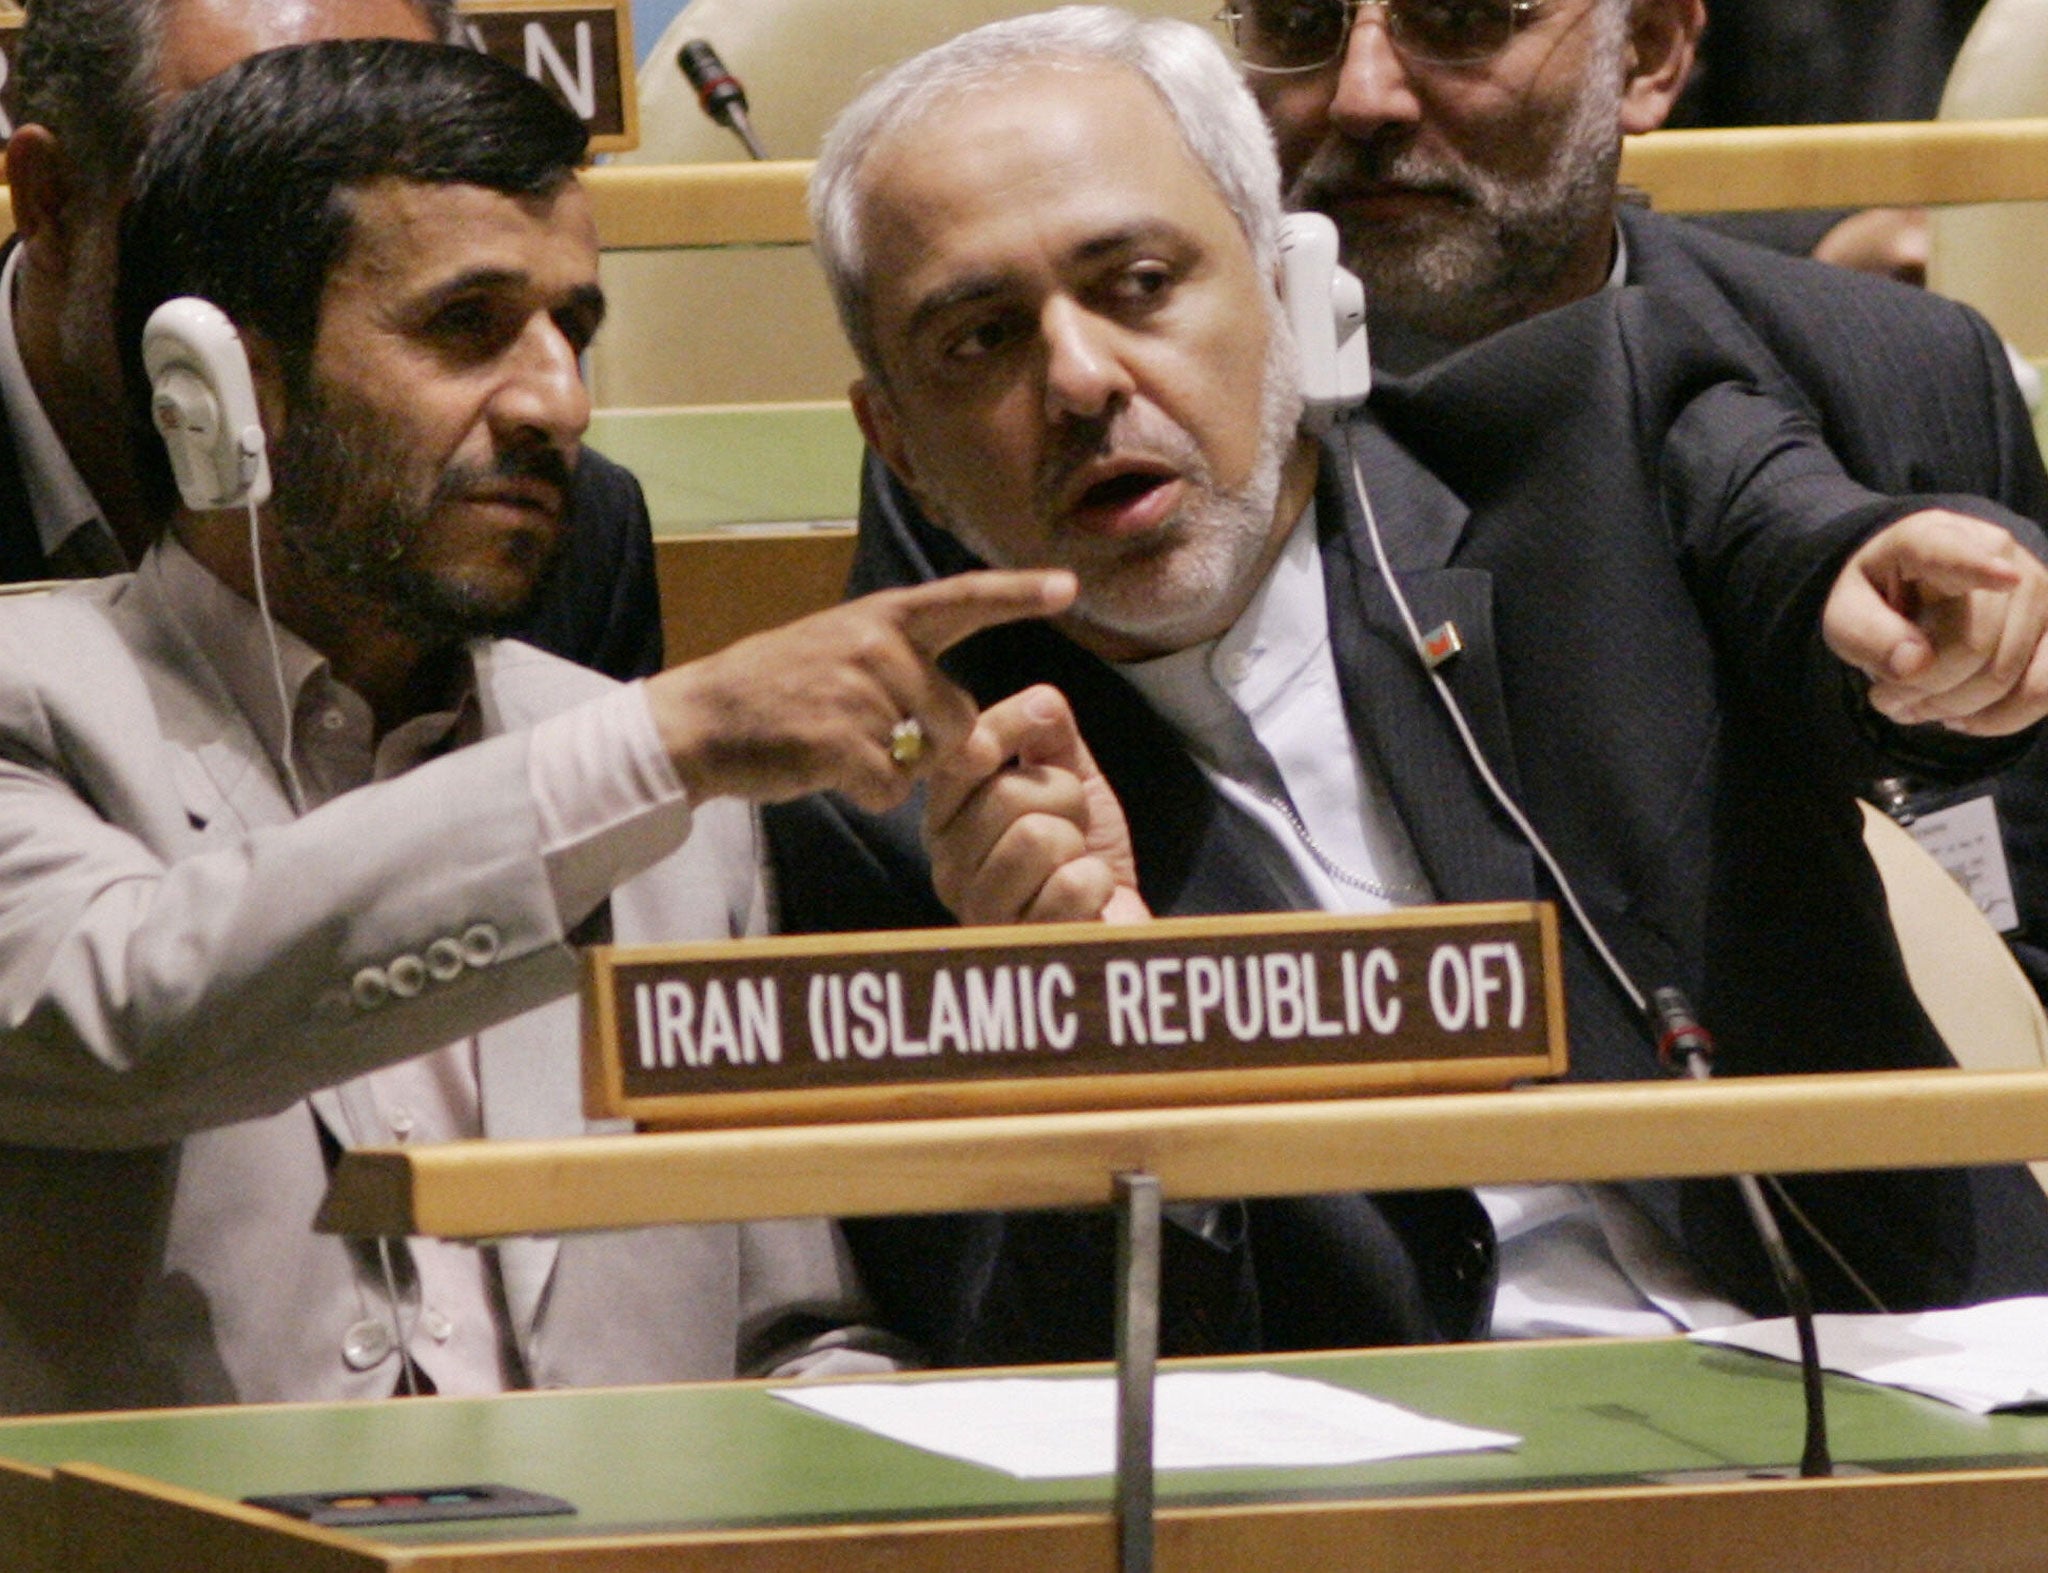 Mohammad Javad Zarif (right) with Mahmoud Ahmadinejad in 2006